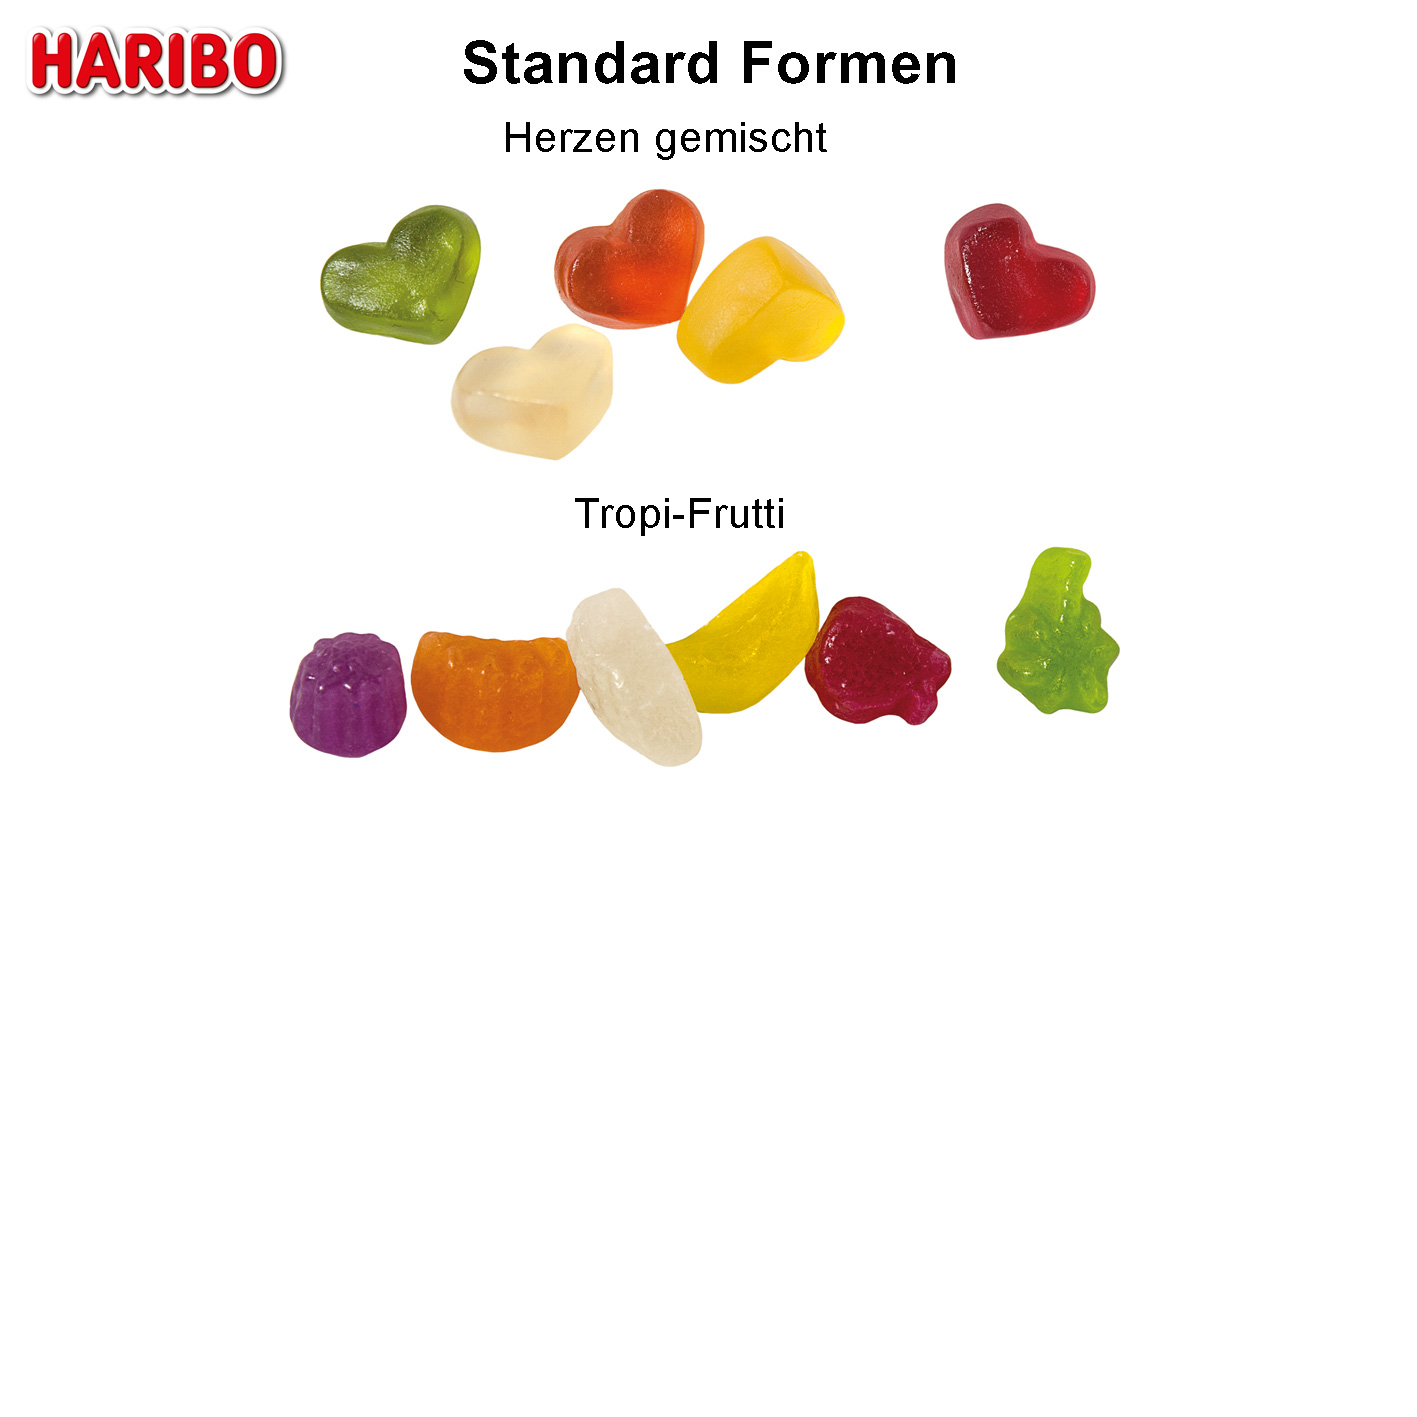 Haribo Standardformen